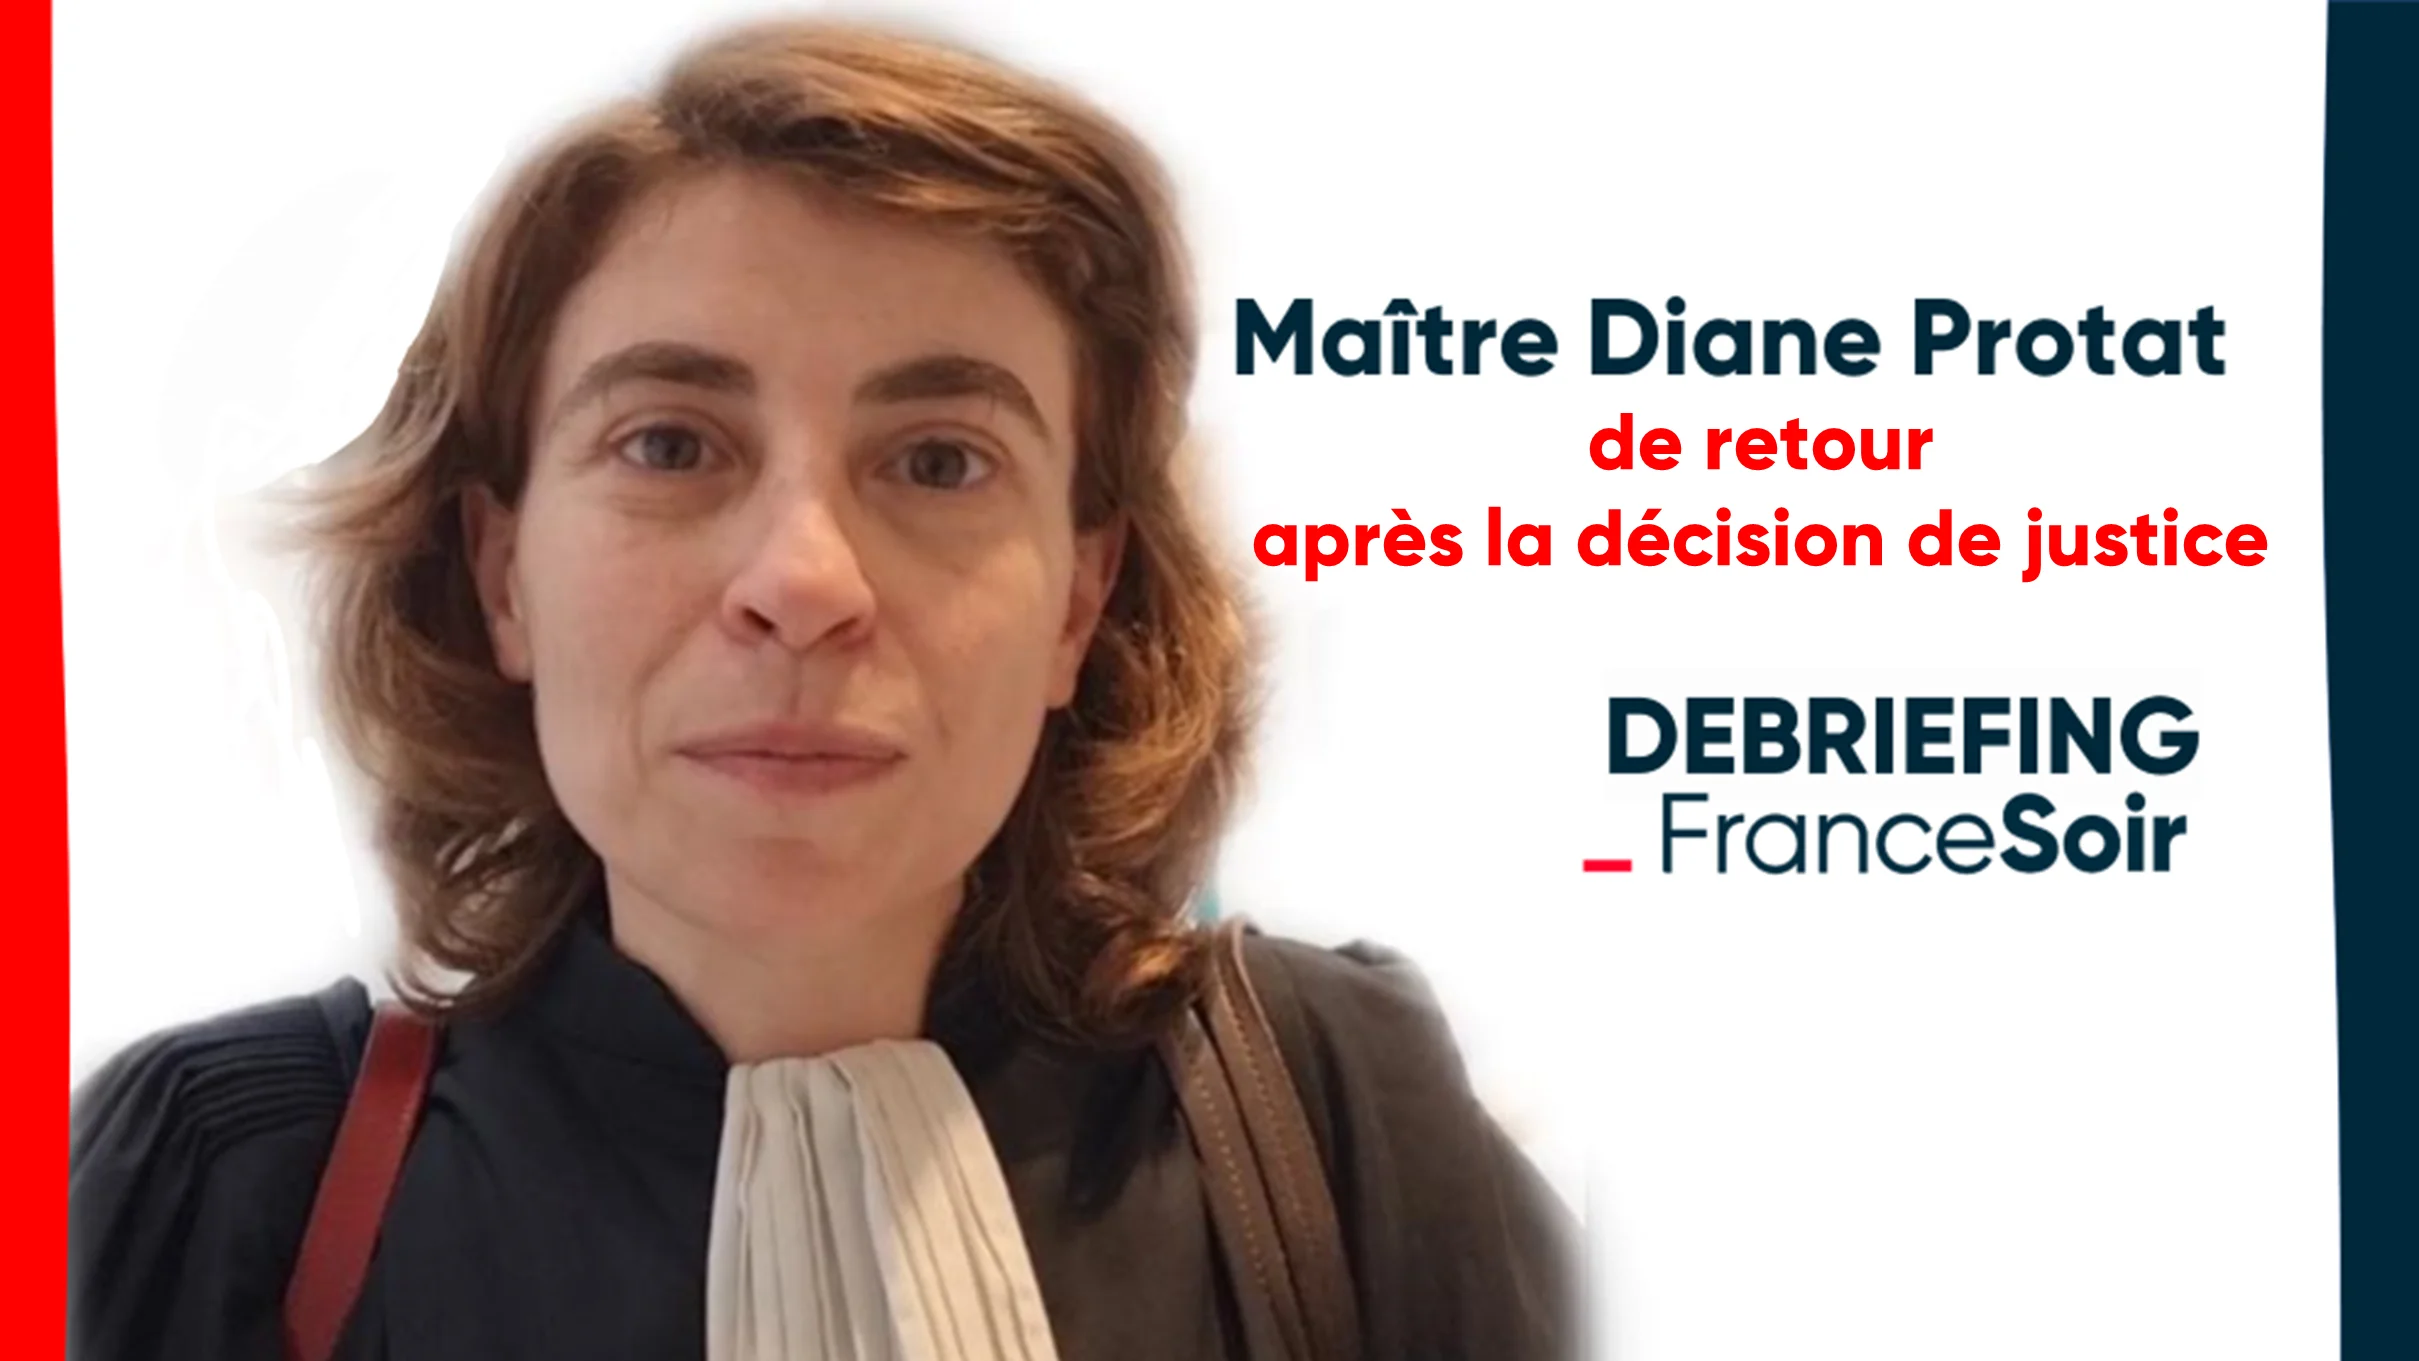 «Il faudra contester devant tous les tribunaux possibles» Maître Diane Protat après la décision du tribunal